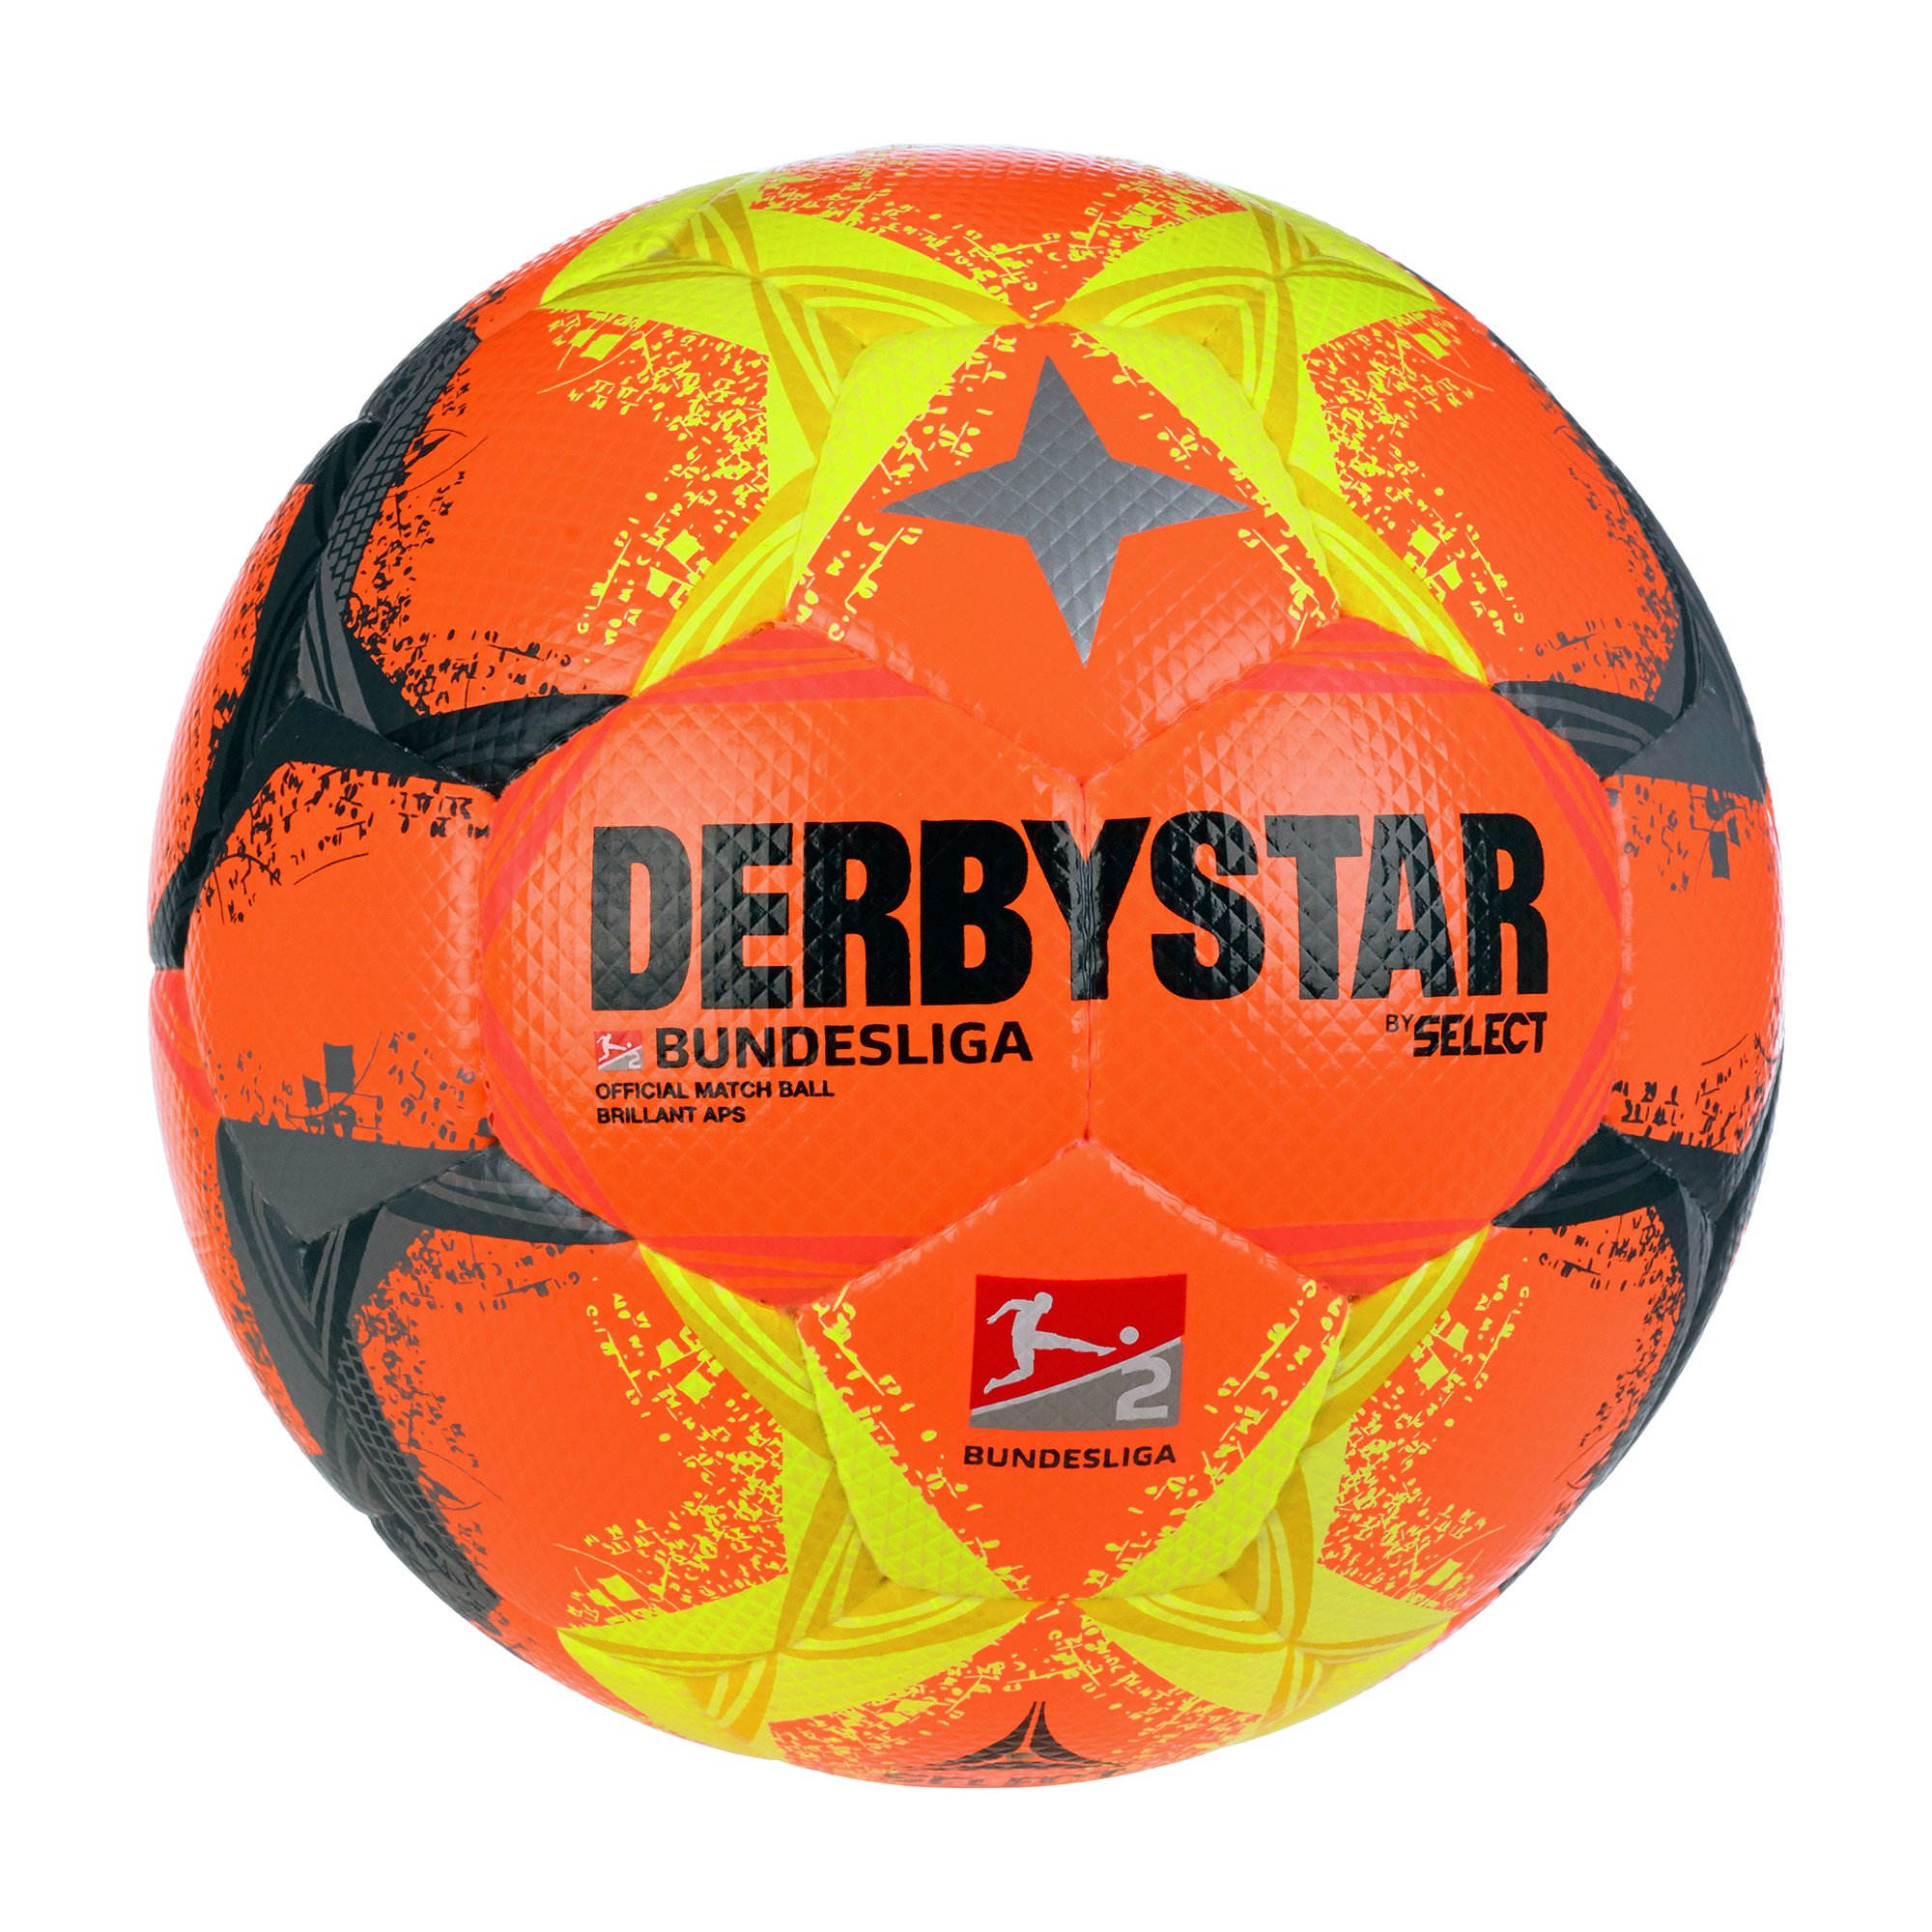 Derbystar 2. Bundesliga Brillant APS v22 - High Fussbälle Visible